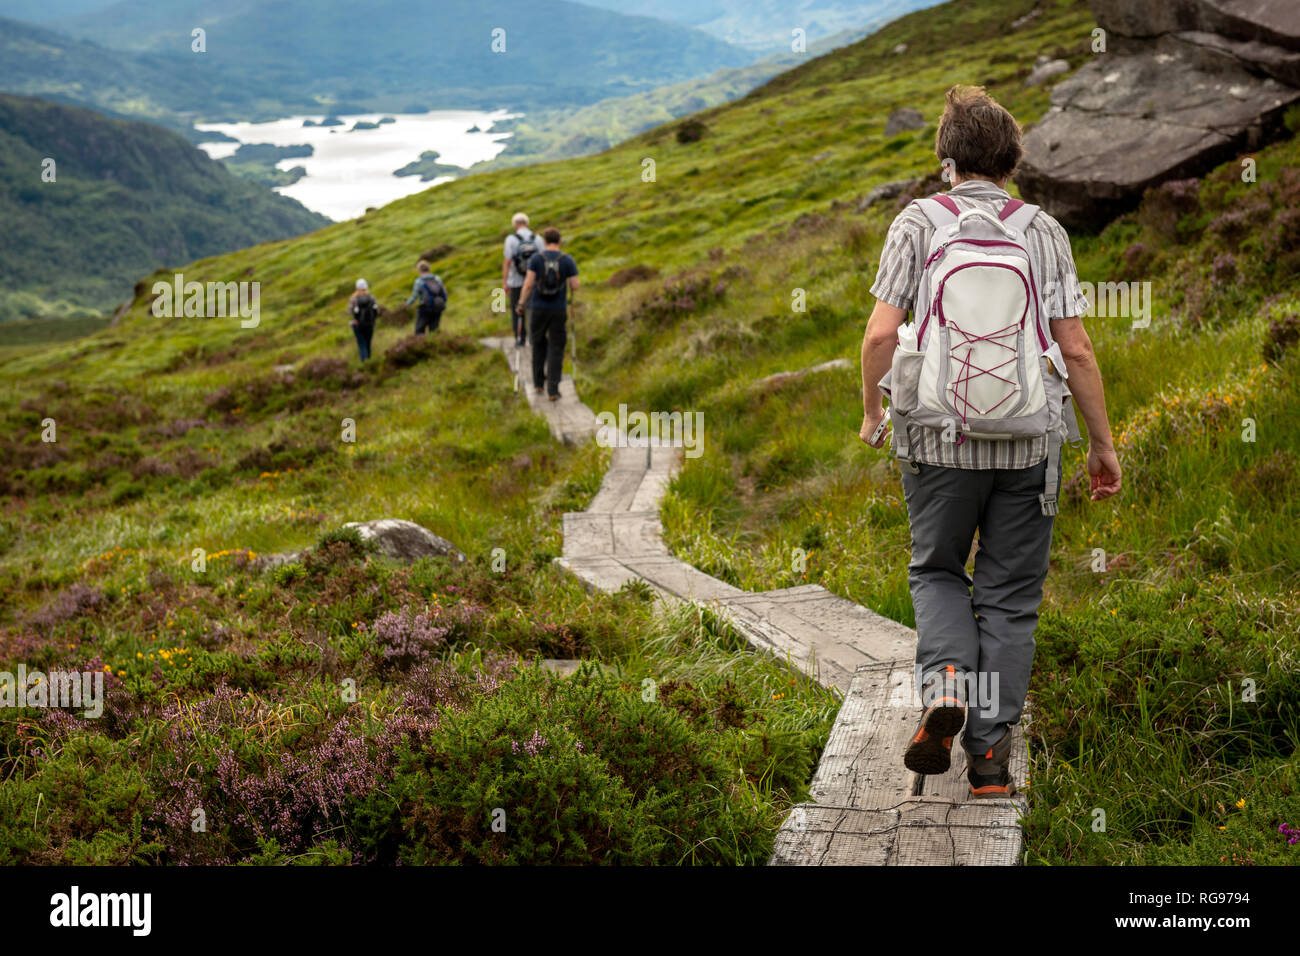 Irland Wandern. Gruppe von Wandertouristen, die auf dem Boardwalk-Fußweg den Torc-Bergweg hinunter mit Blick auf den Upper Lake in Co. Kerry, Irland, absteigen. Stockfoto